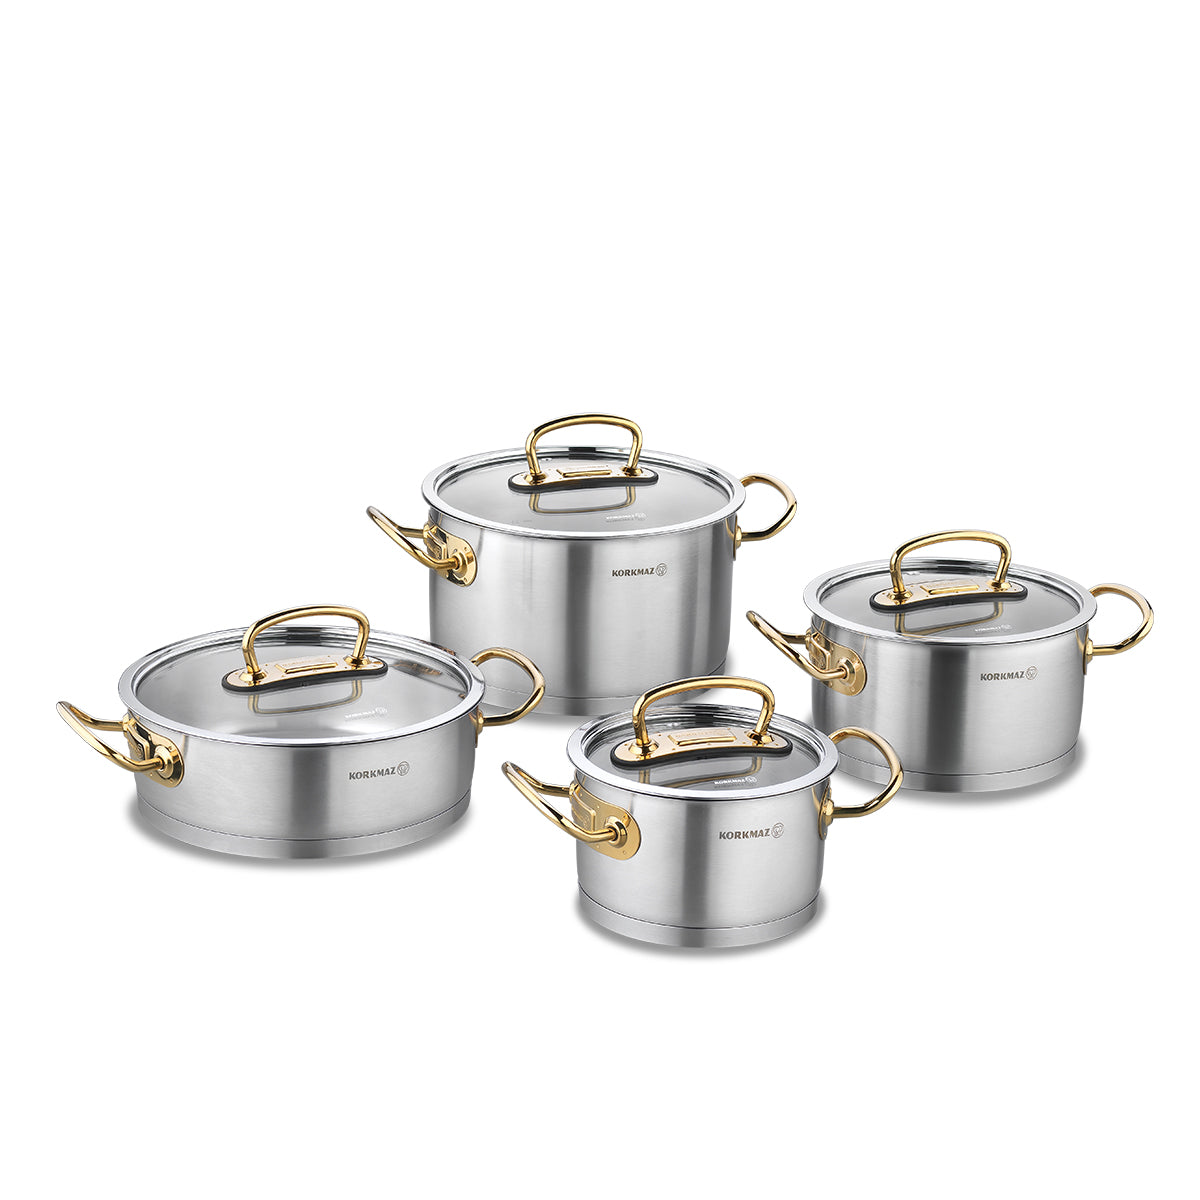 Proline 8pcs. Cookware Topfset Gold/Silber/RoseGold